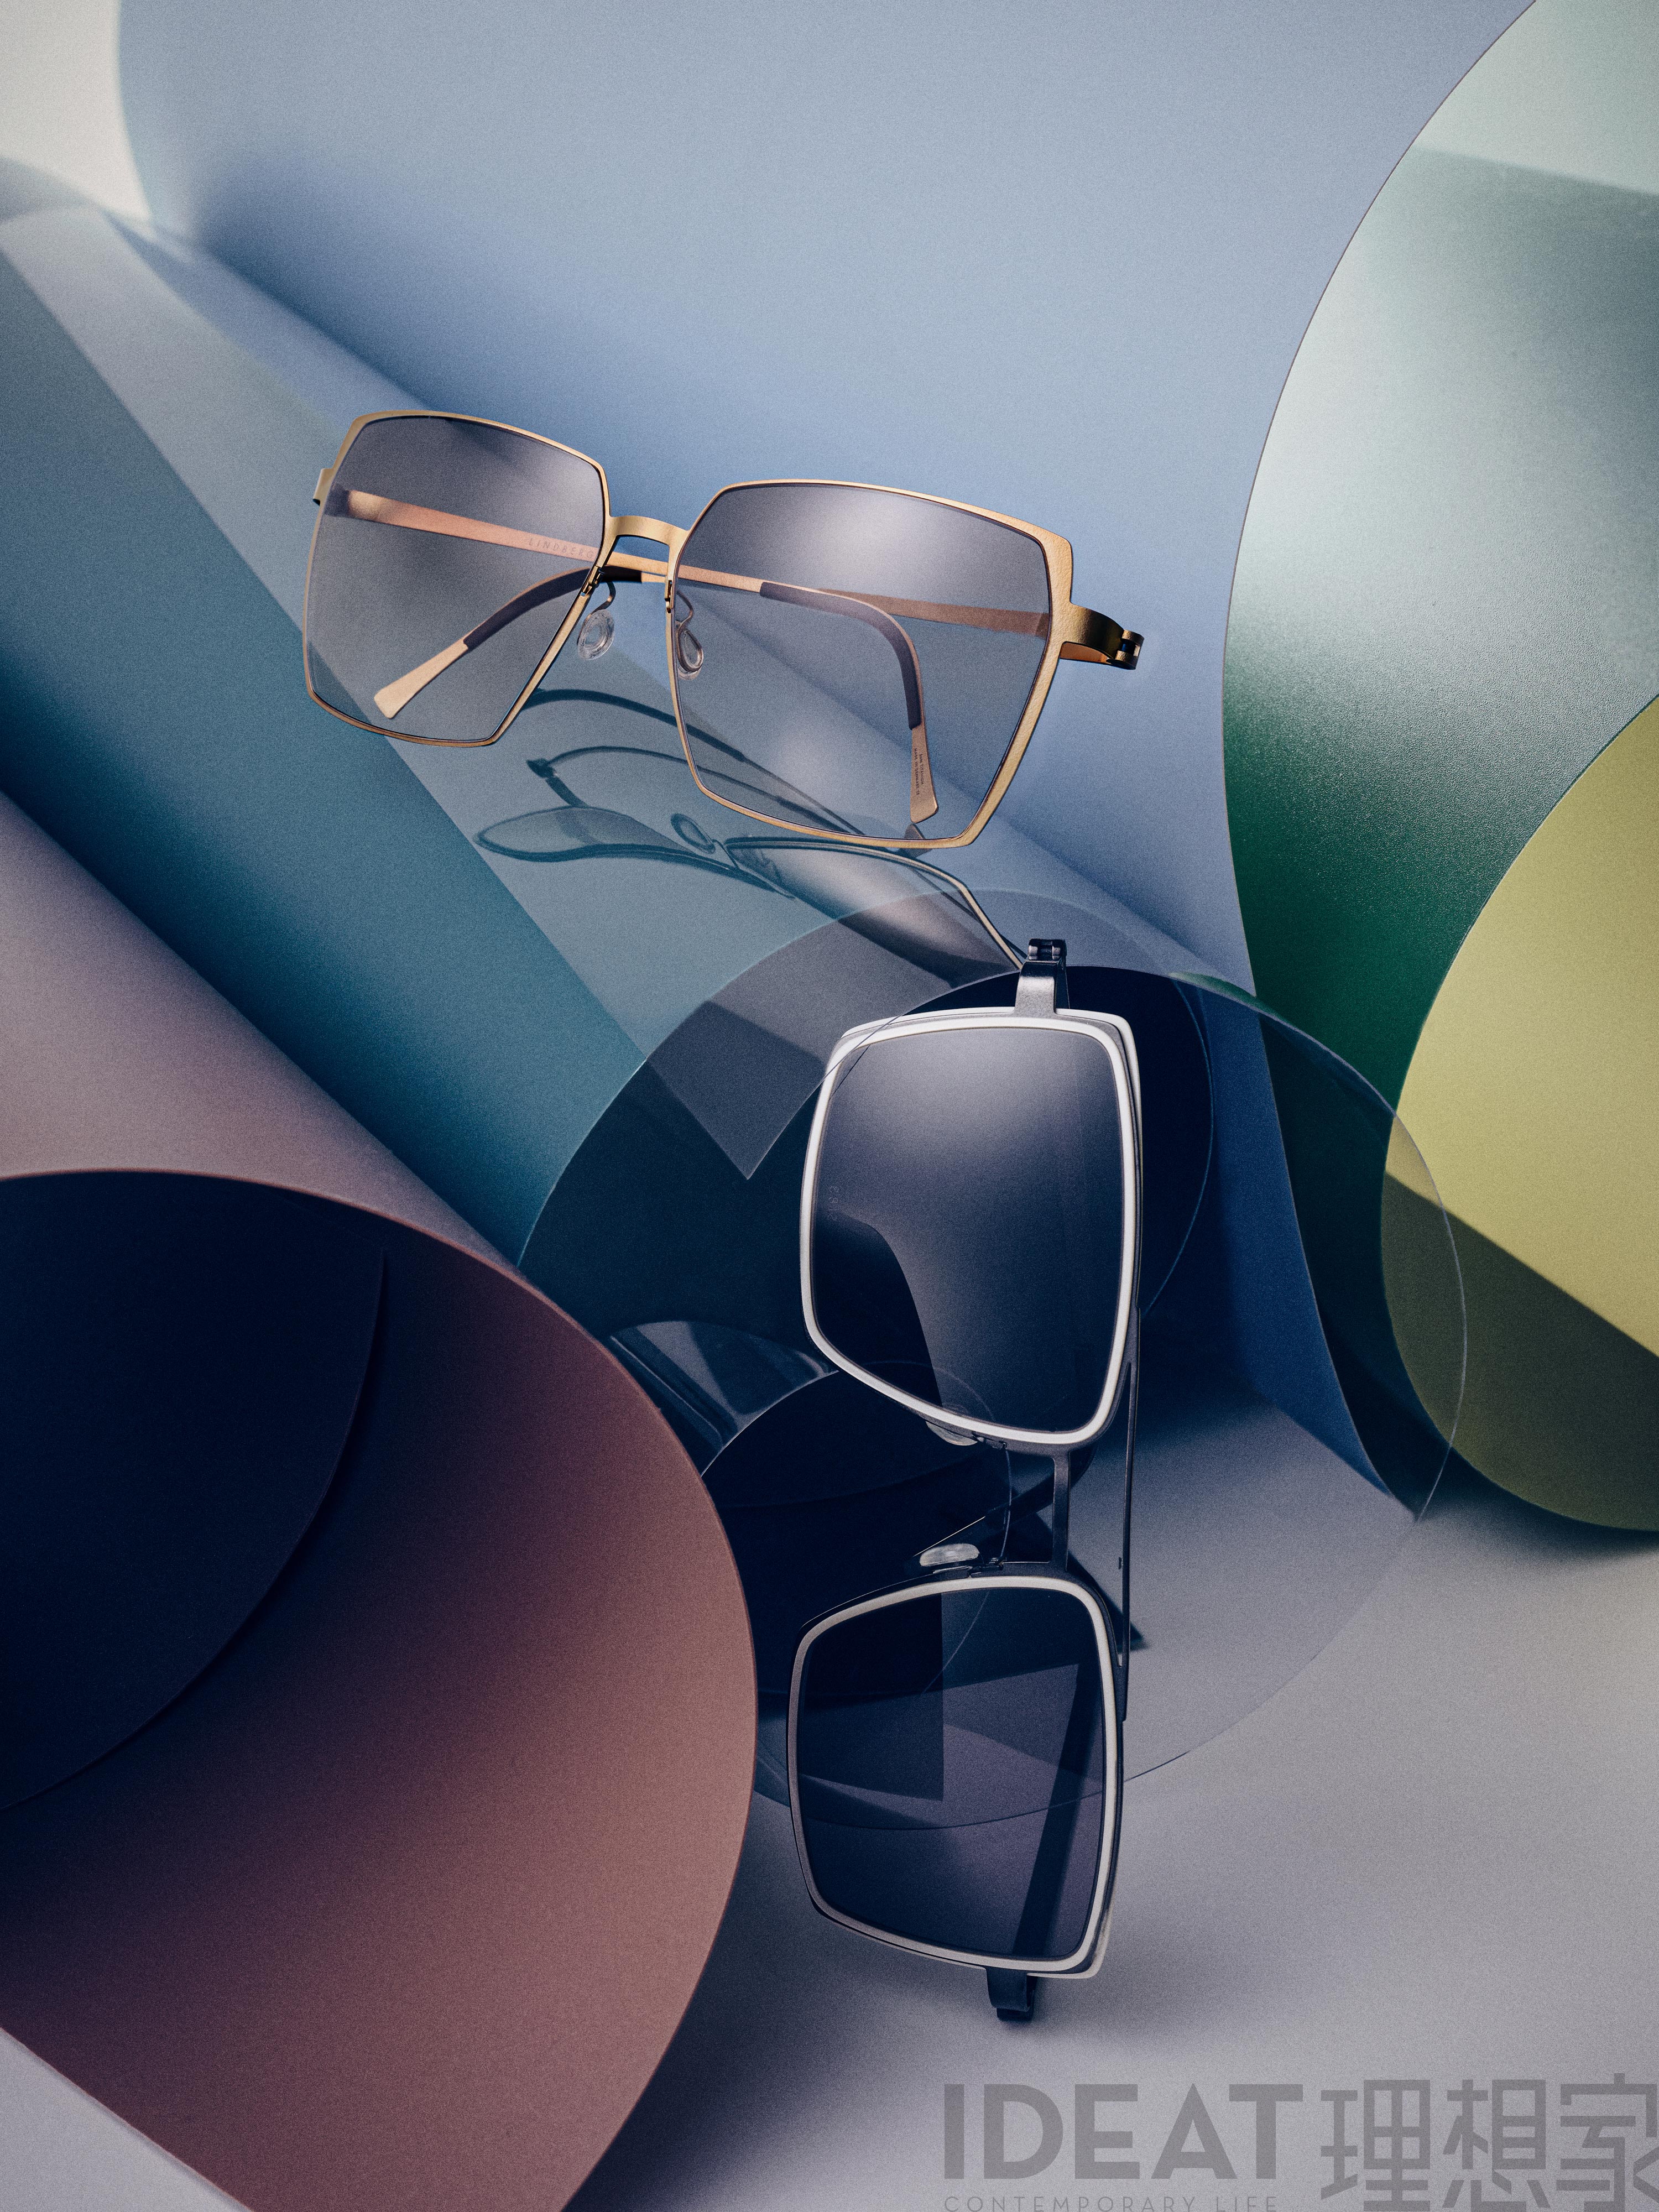 IDEAT-Magazinseite mit eckigen LINDBERG-Sonnenbrillen aus Titan, Modelle 8907 und 8410